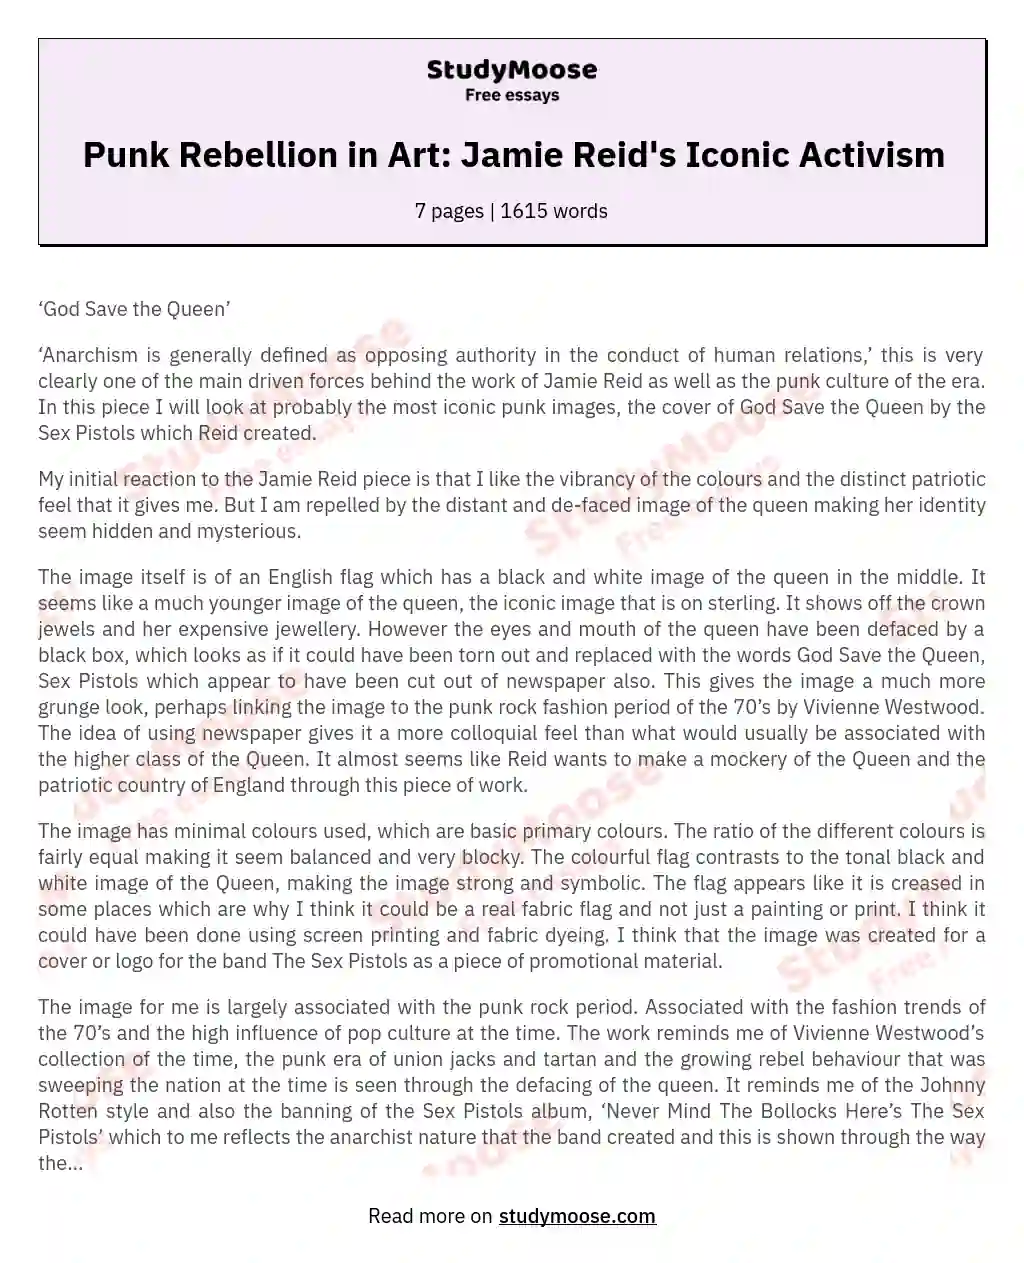 Punk Rebellion in Art: Jamie Reid's Iconic Activism essay